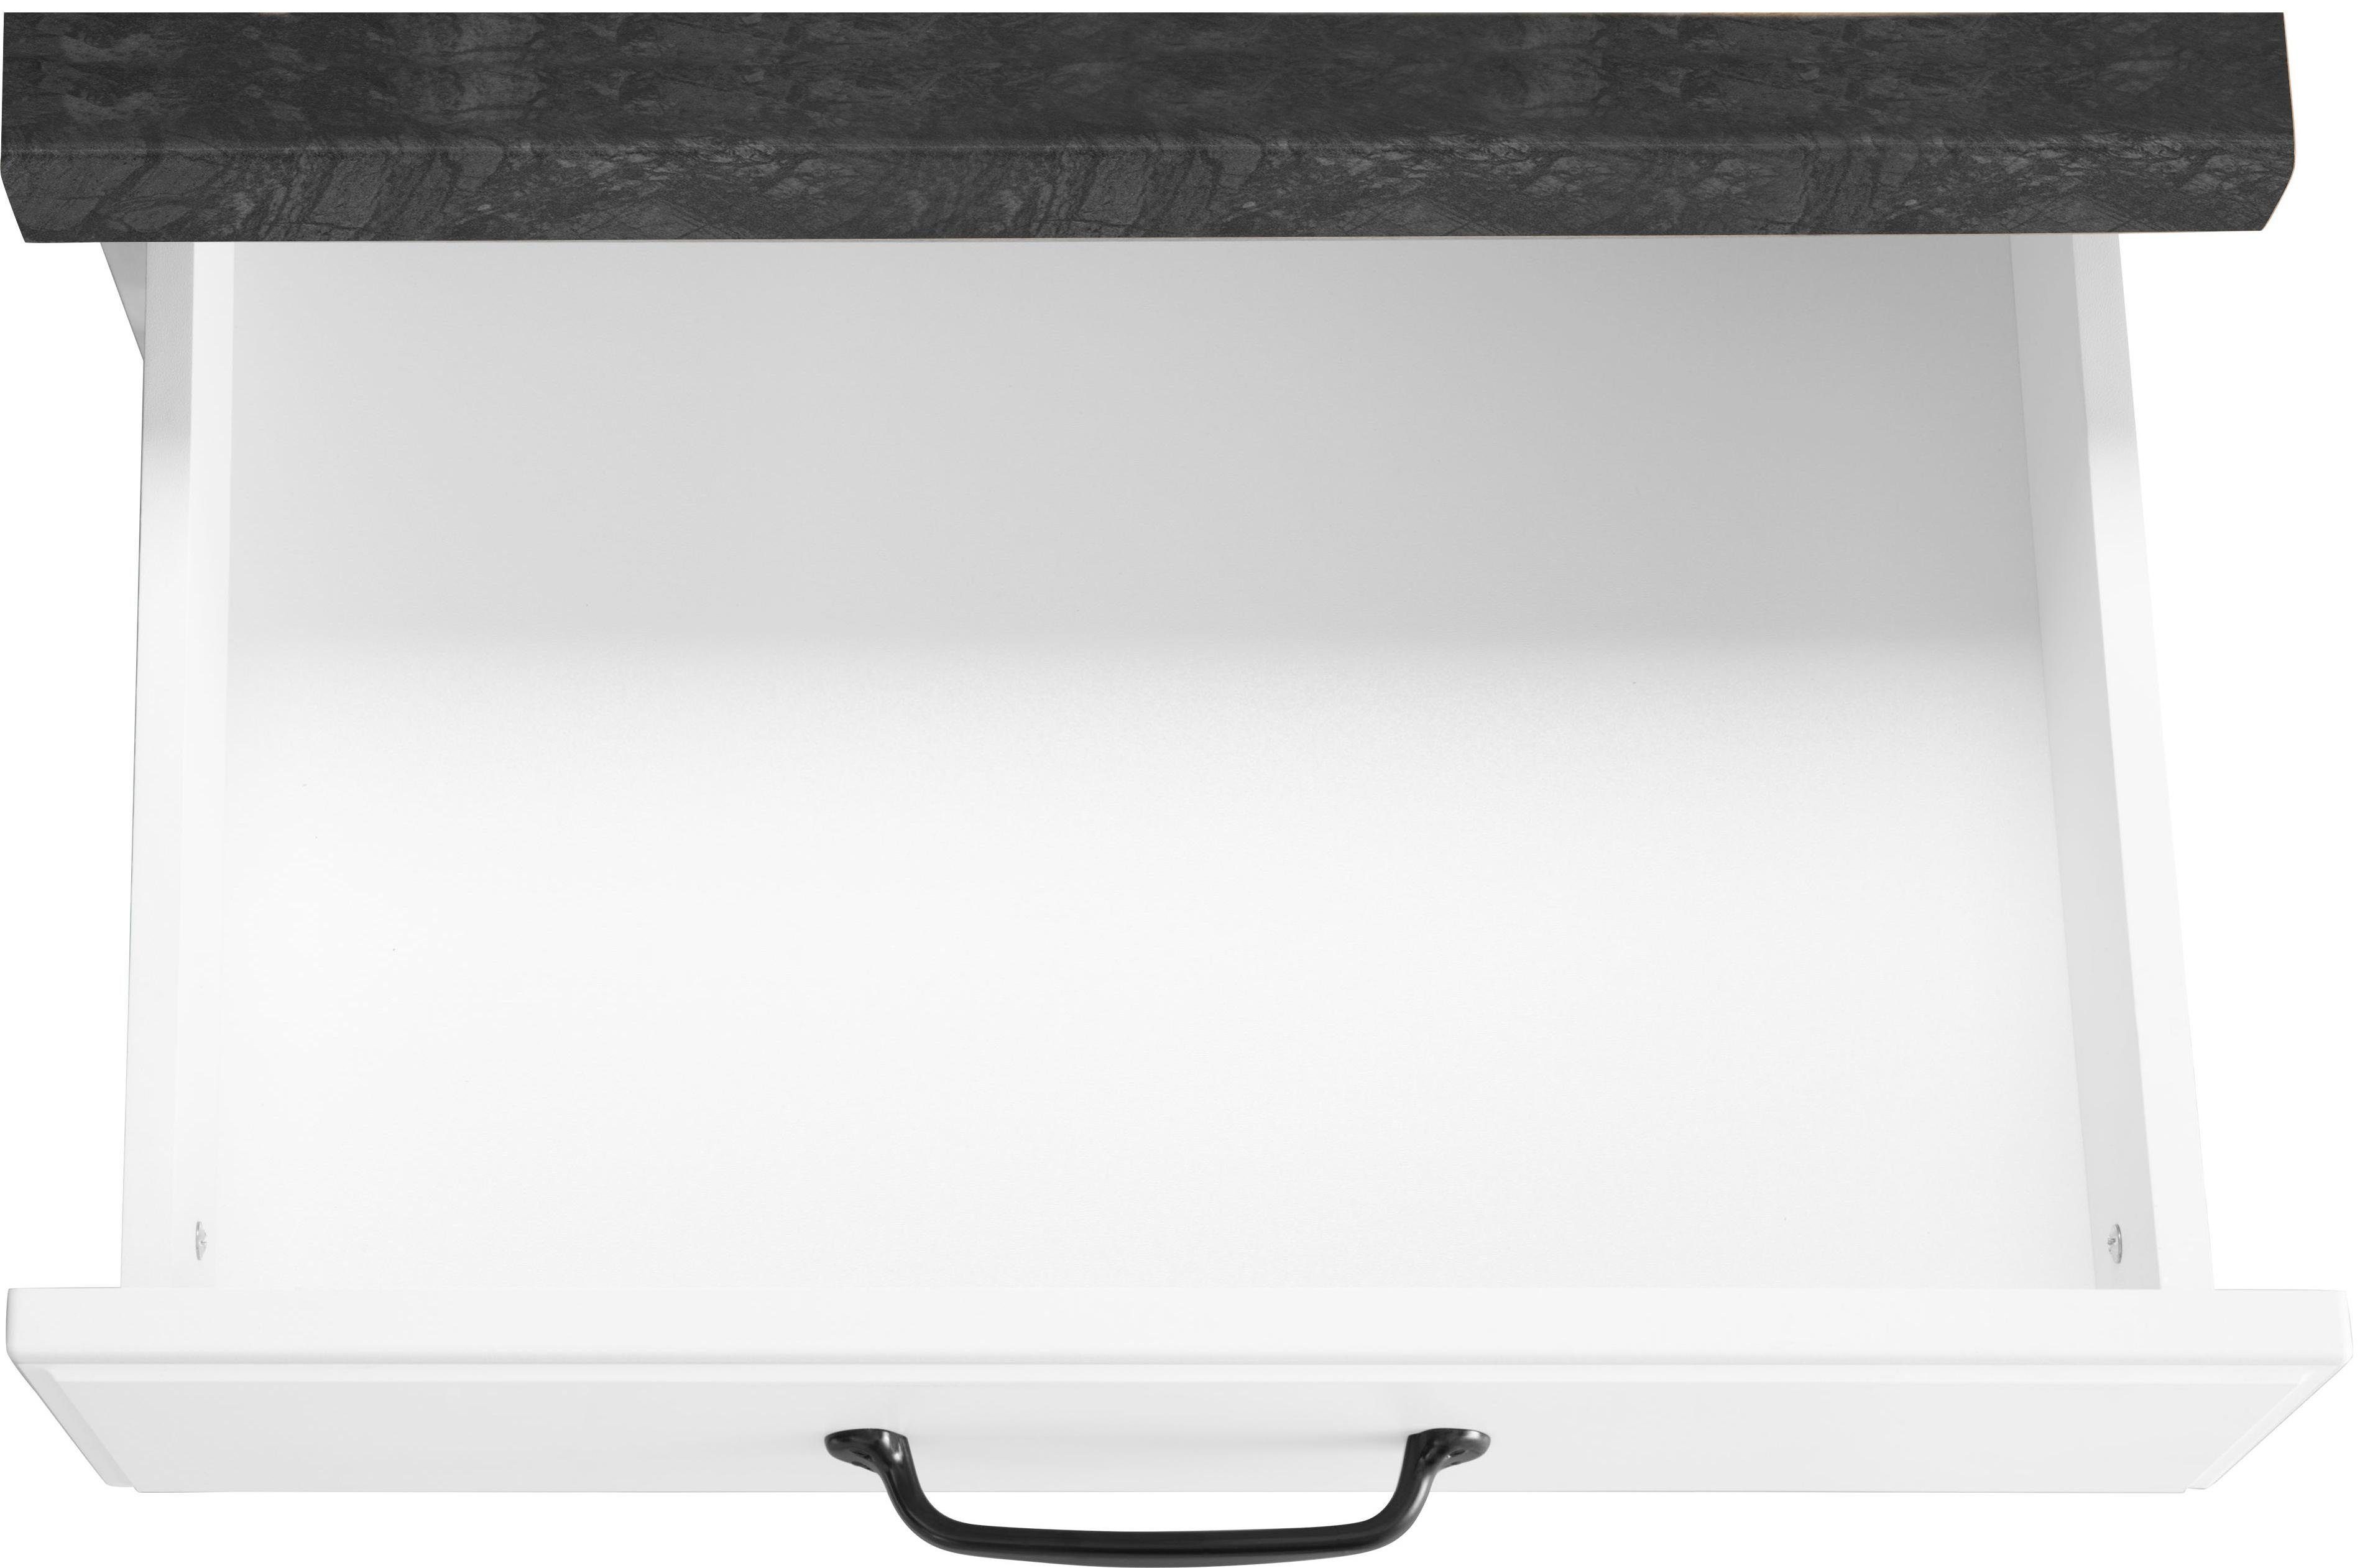 cm Erla wiho mit weiß Küchen Unterschrank breit | weiß/granit schwarz Kassettenfront 60